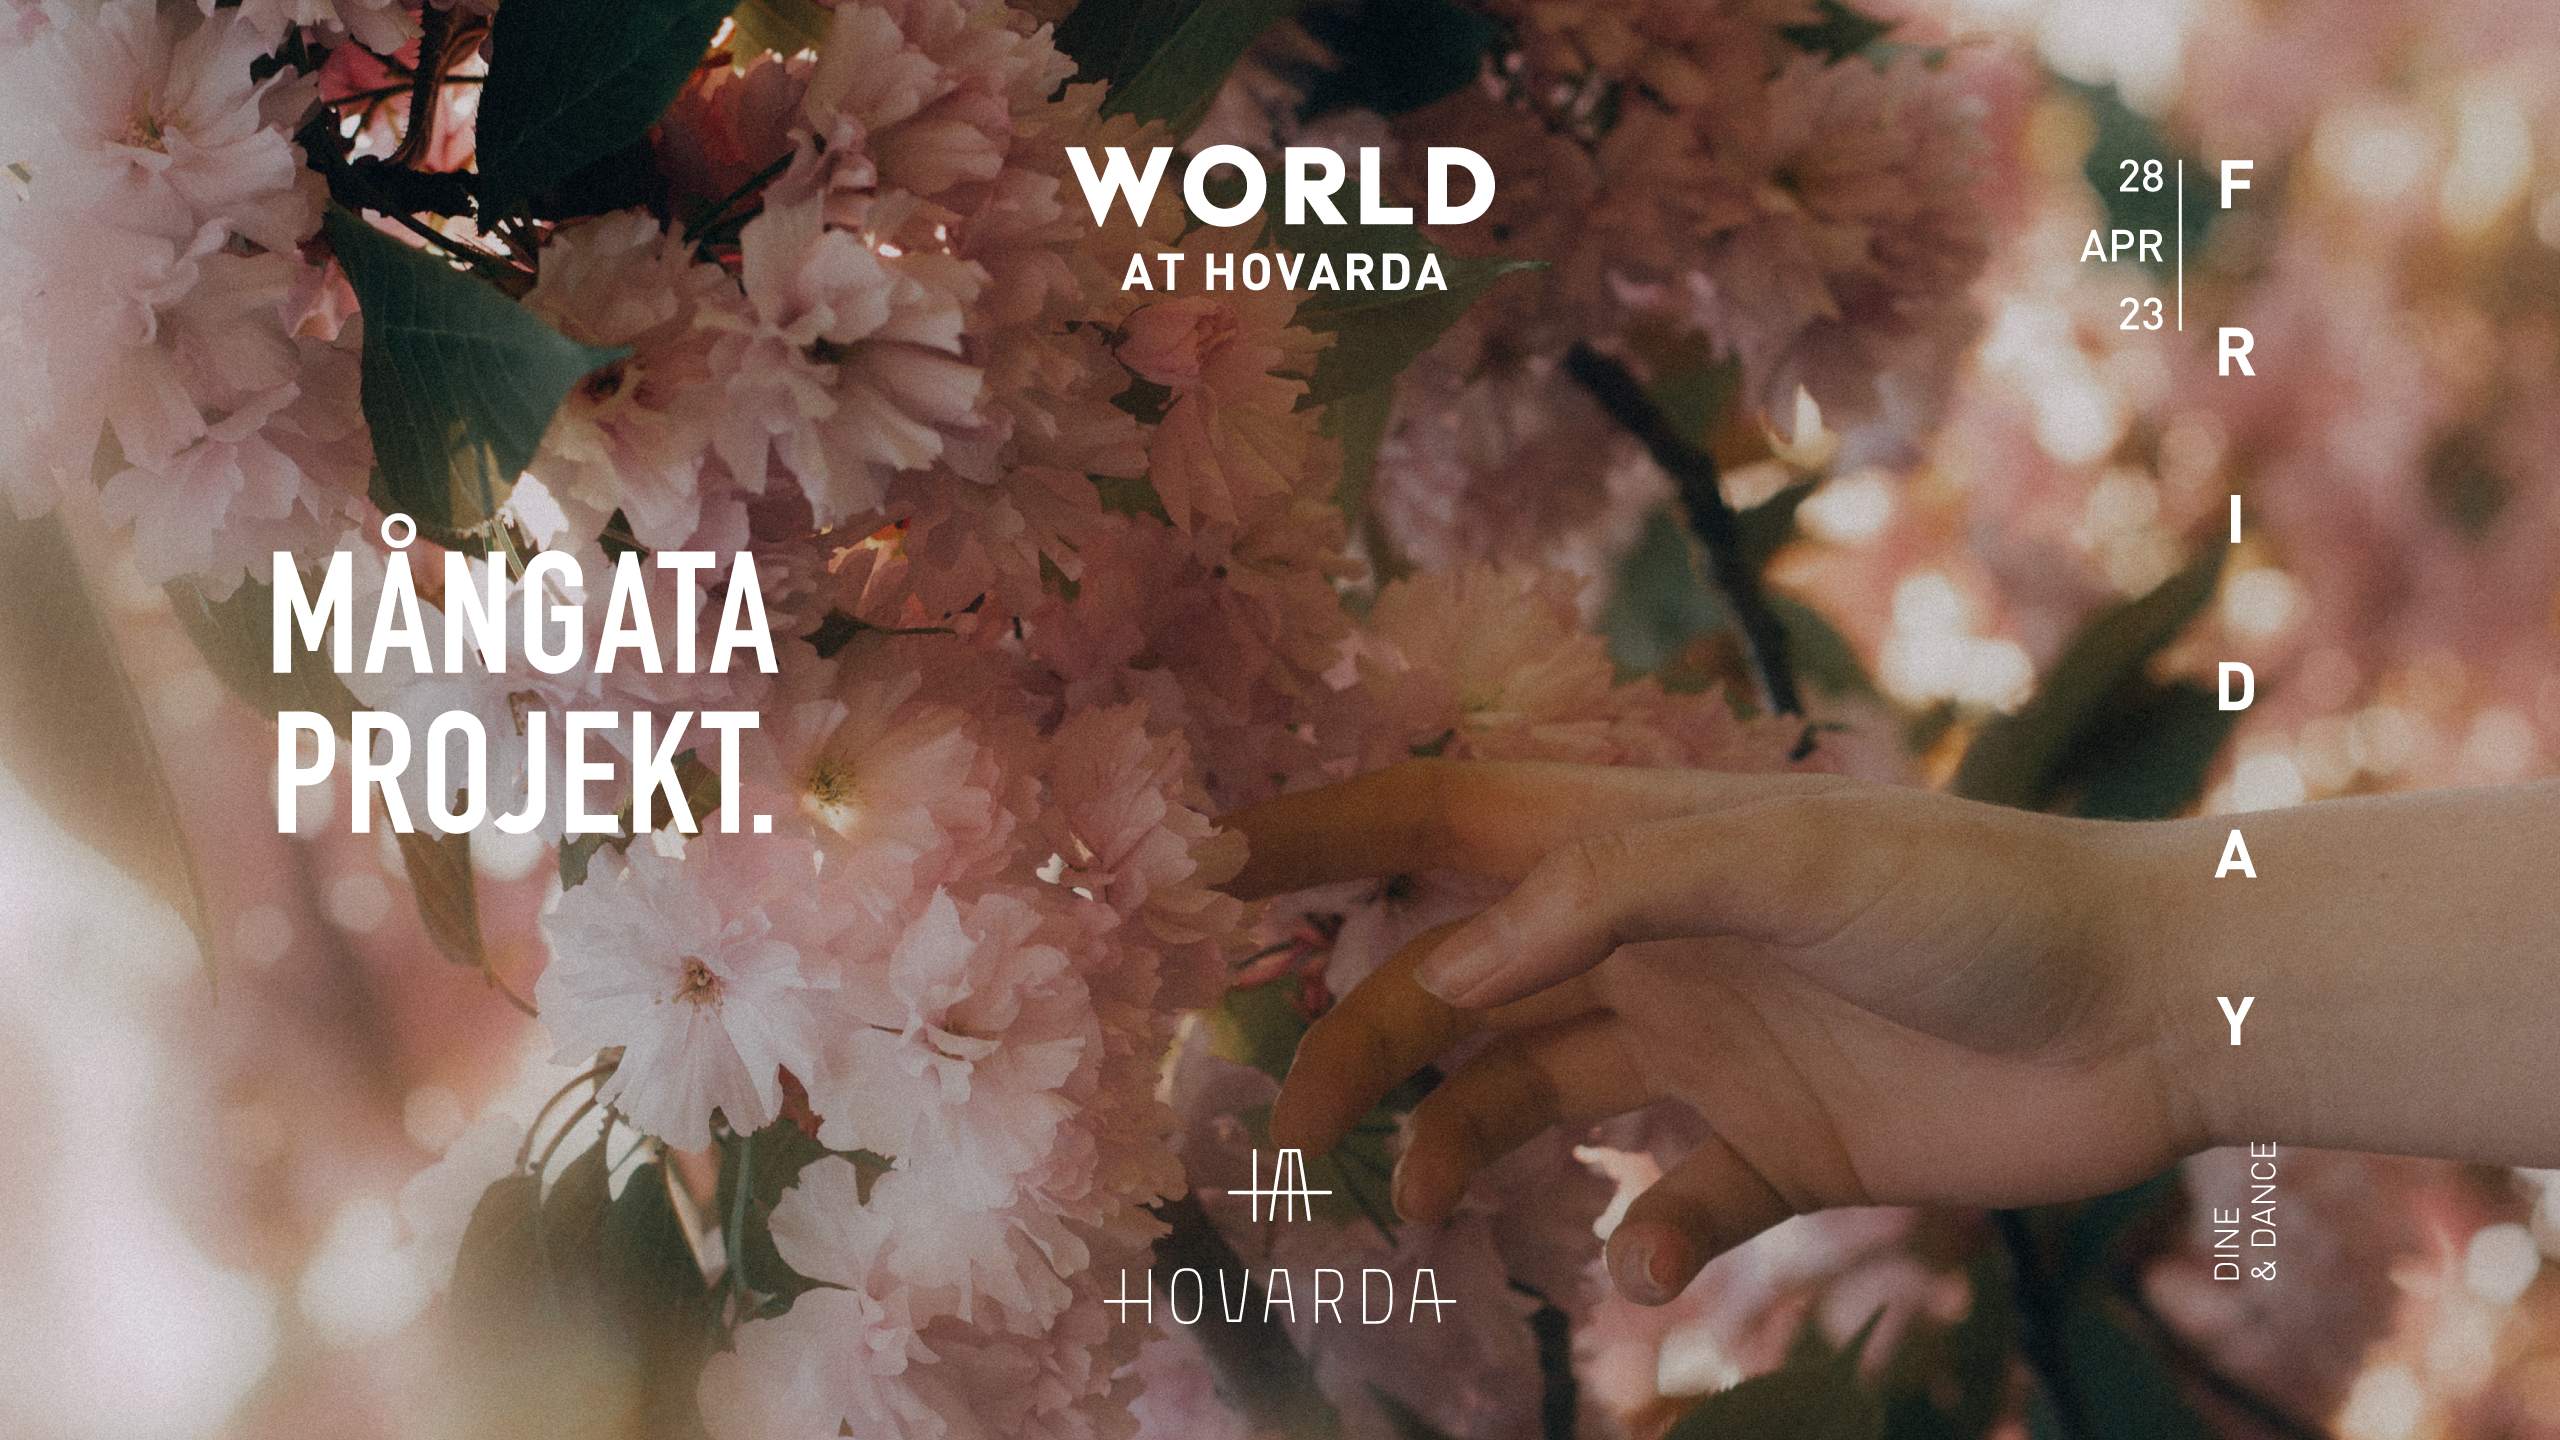 MÅNGATA PROJEKT: World At Hovarda - フライヤー表